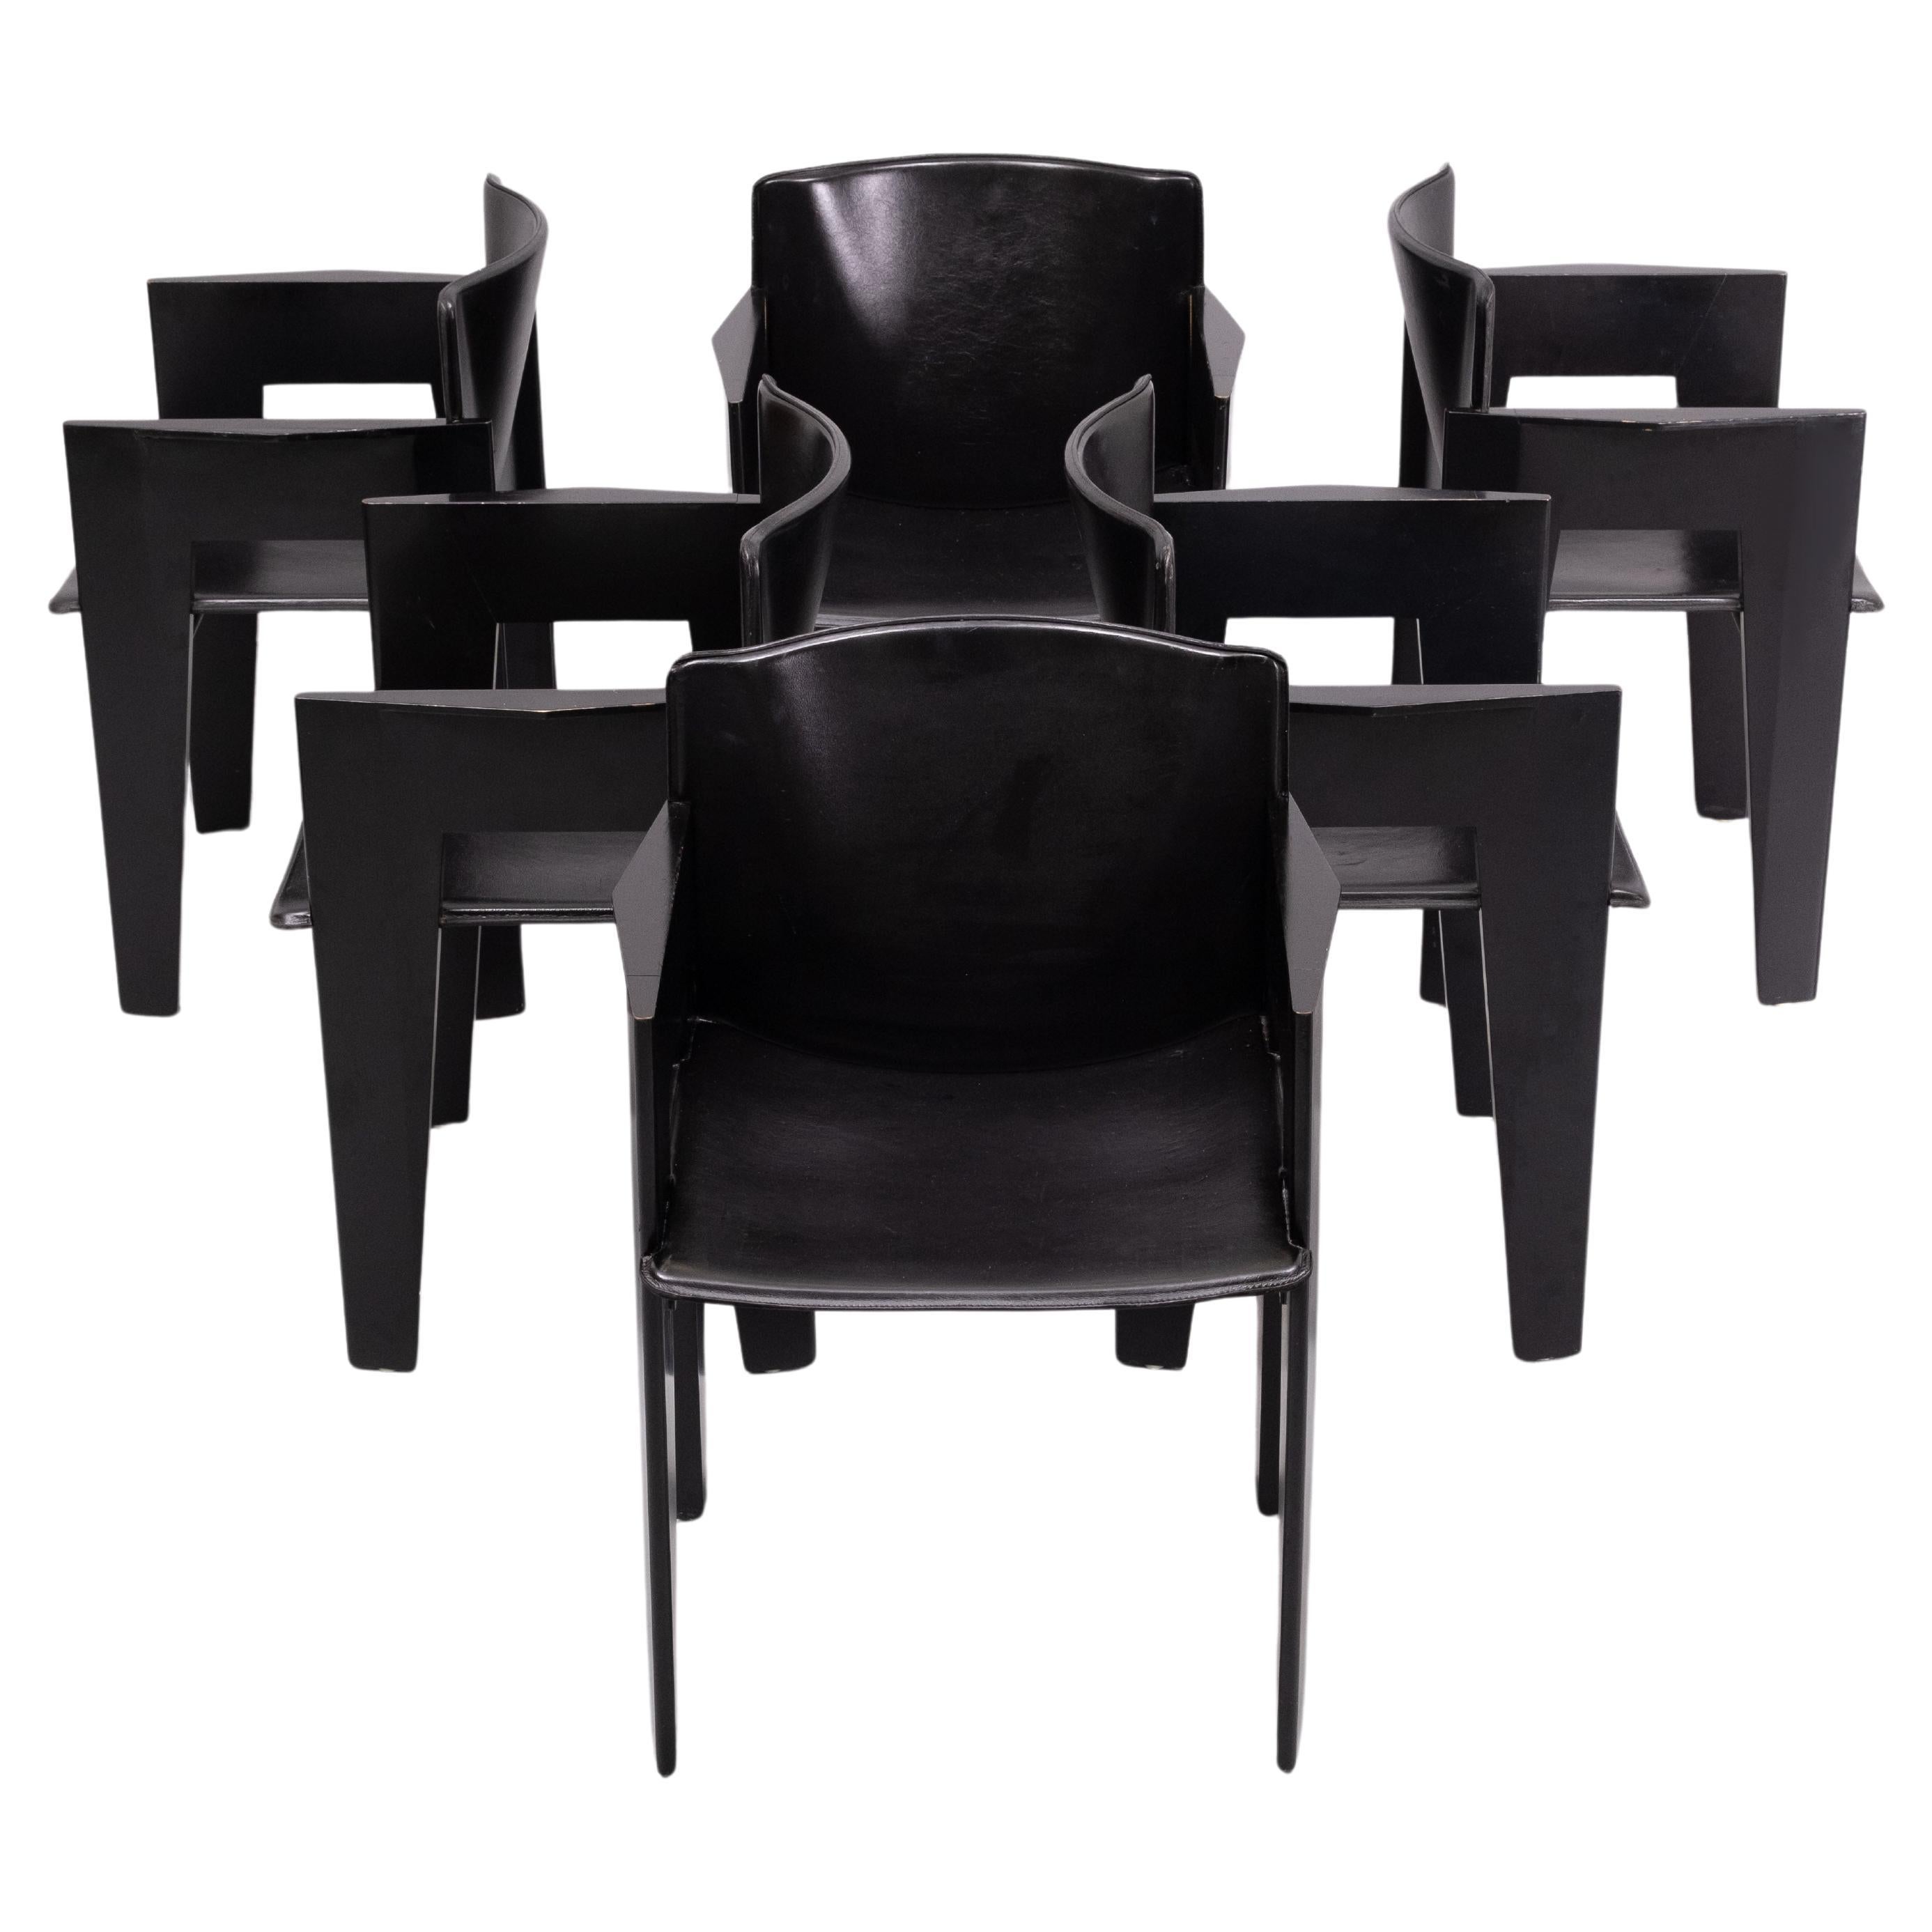 6 Postmoderner Stuhl von Arco, Niederlande, Stühle aus ebonisierter Eiche und Sattelleder, ungewöhnlicher Sessel aus den 1980er Jahren, entworfen von einem niederländischen Architekten. Das skulpturale und elegante Erscheinungsbild in Verbindung mit